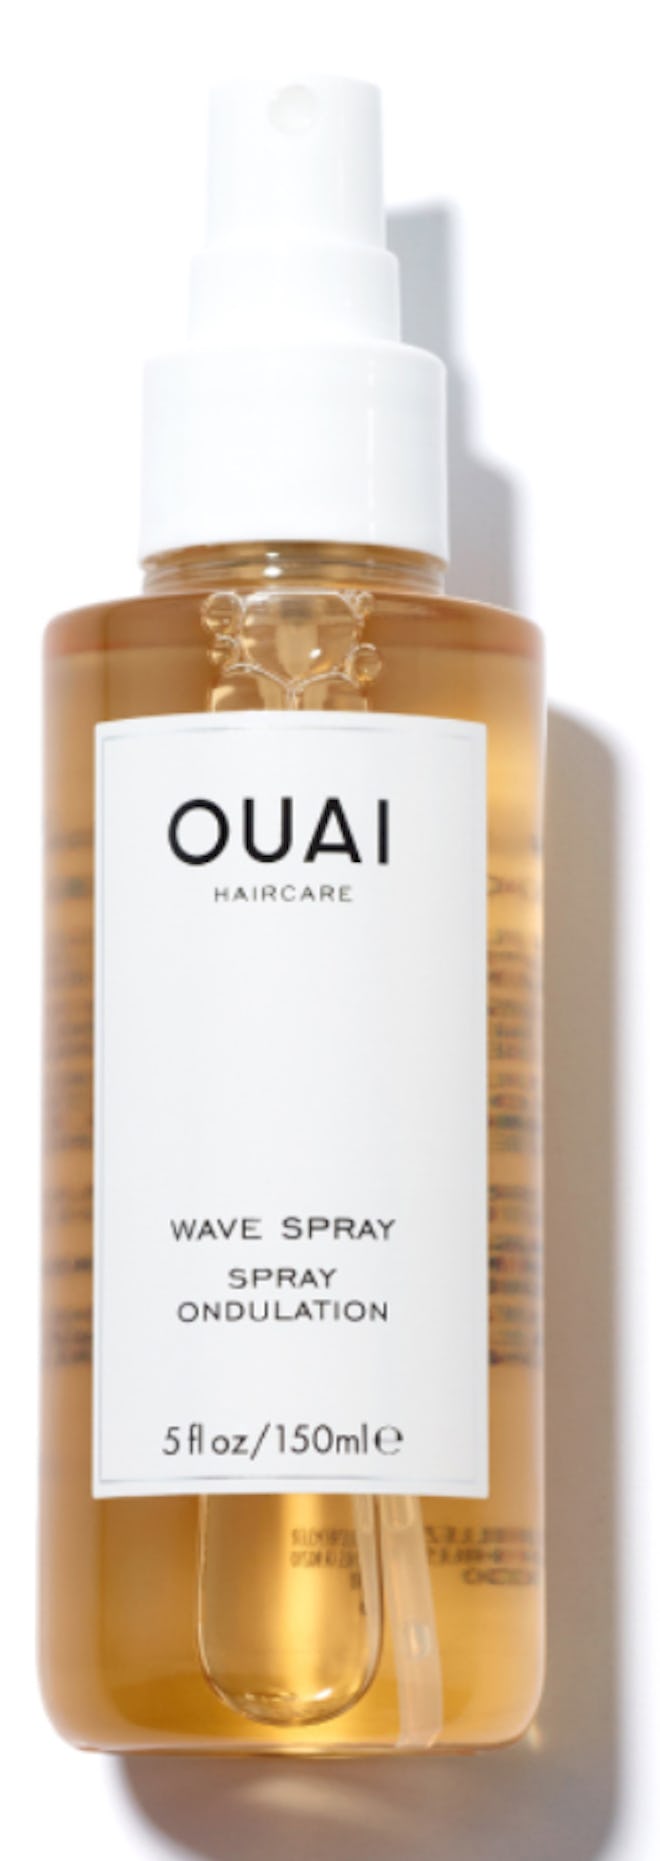 Ouai Wave Spray for type 2 hair